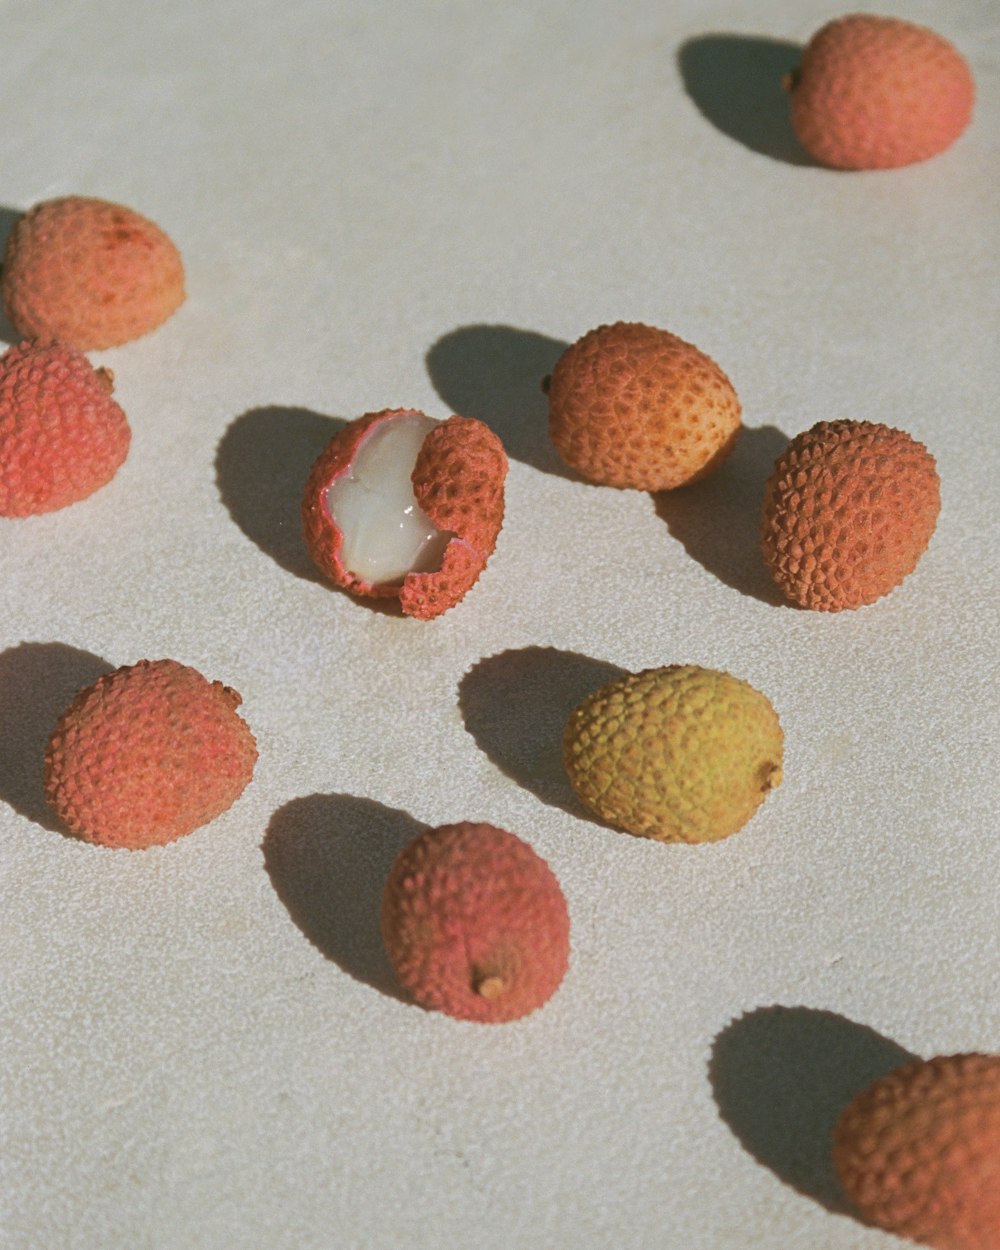 un grupo de frutas asentadas sobre una superficie blanca